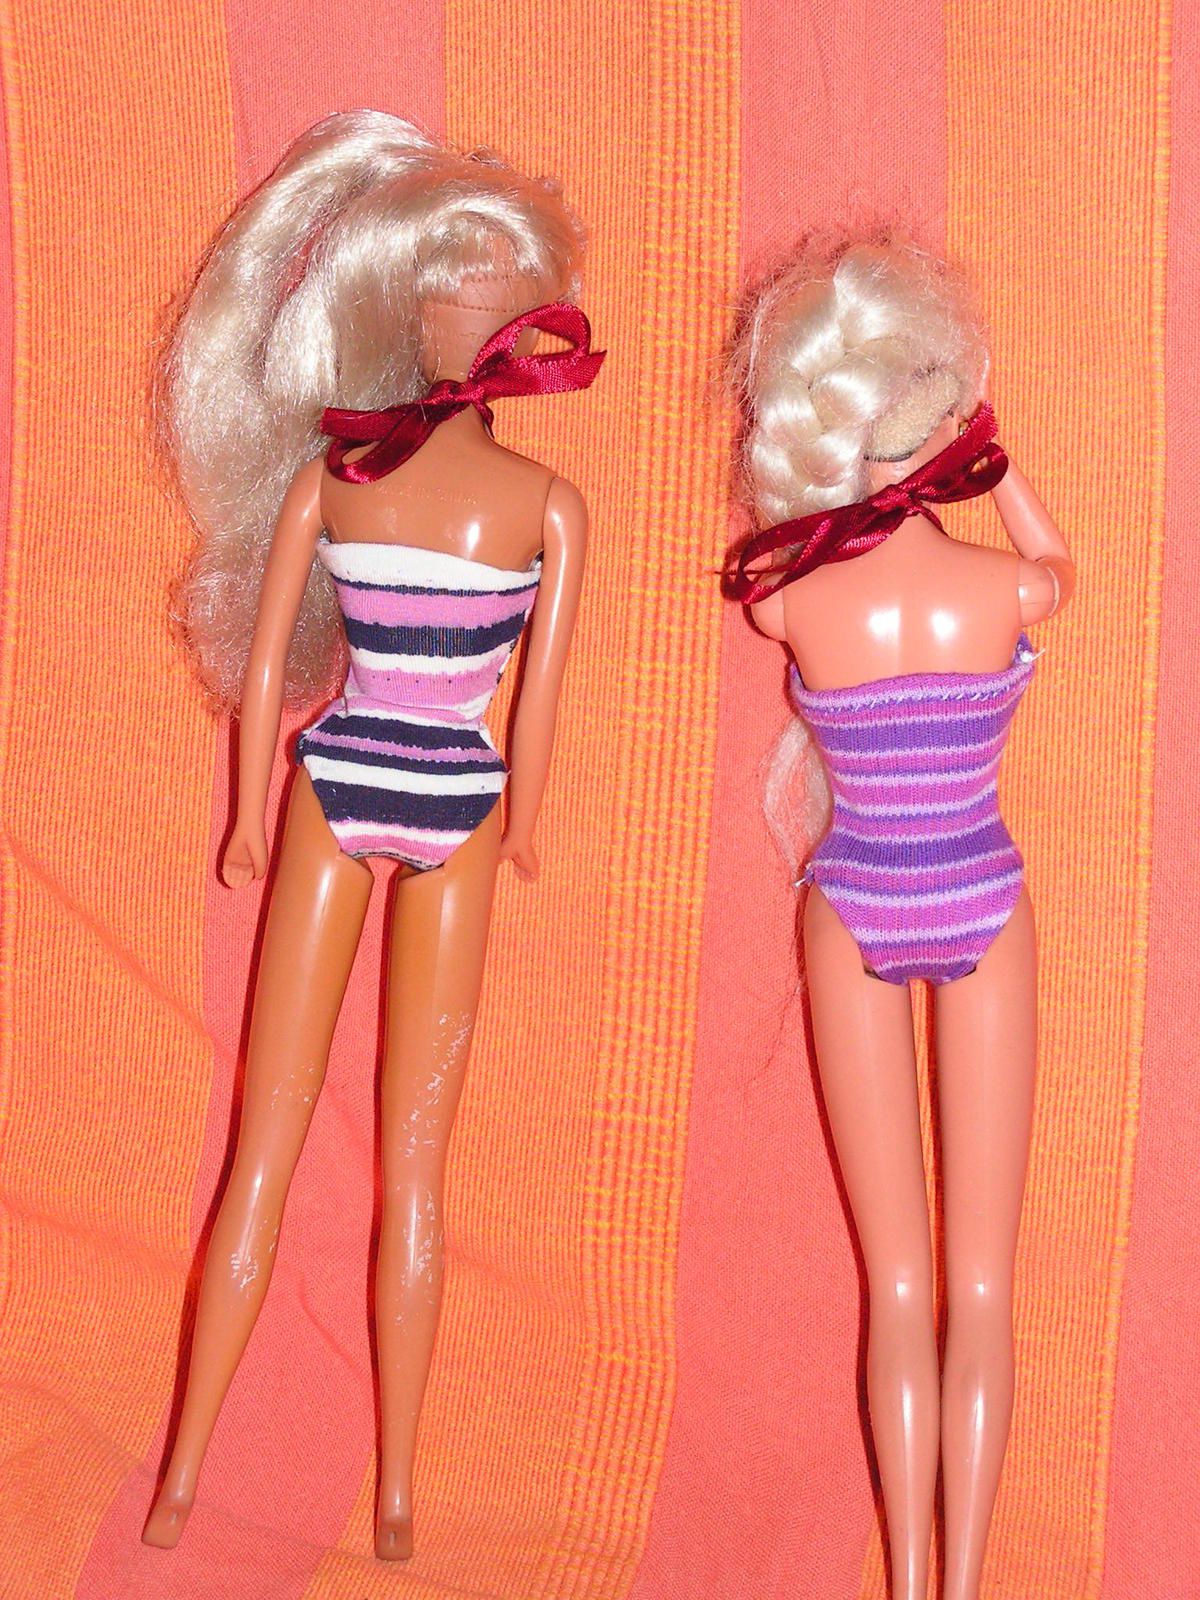 Maillot de bain pour poupées Barbie - kekeli bricole